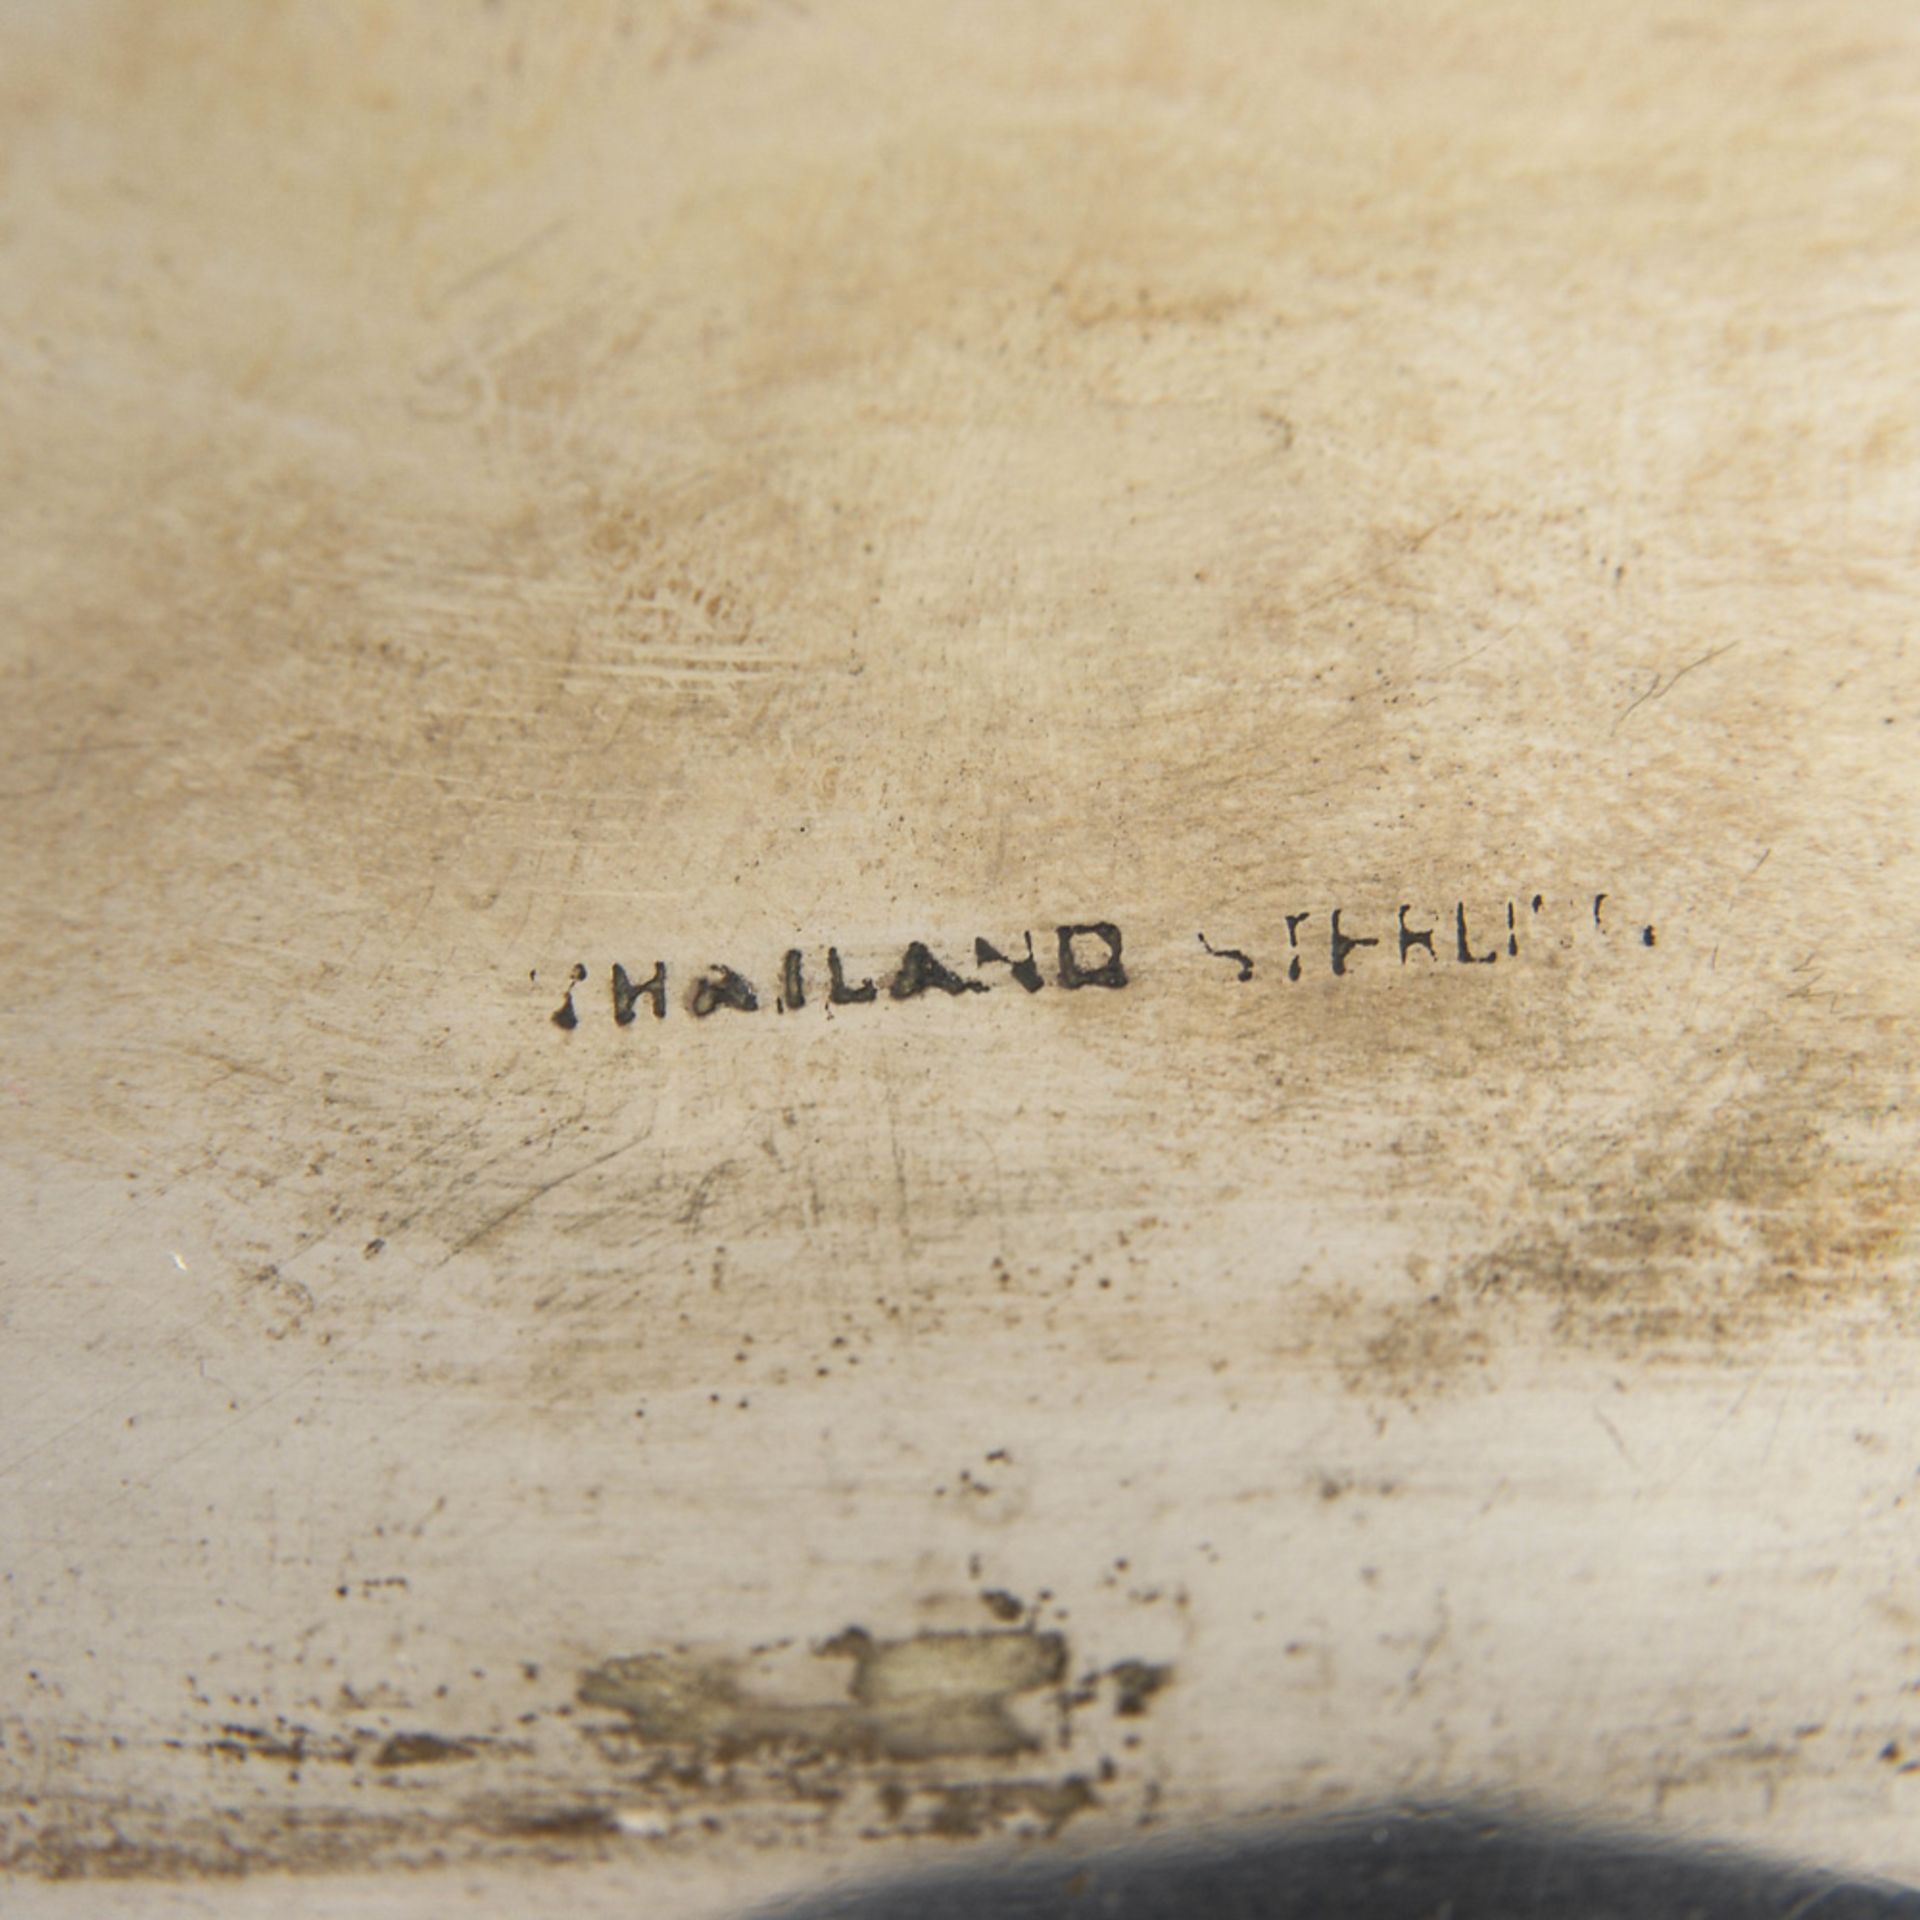 Silberschatulle.Thailand, 20. Jahrhundert. Thailand/Sterling gestempelt. 8 x 26 x 17,5 cm.1087 g. - Bild 3 aus 3